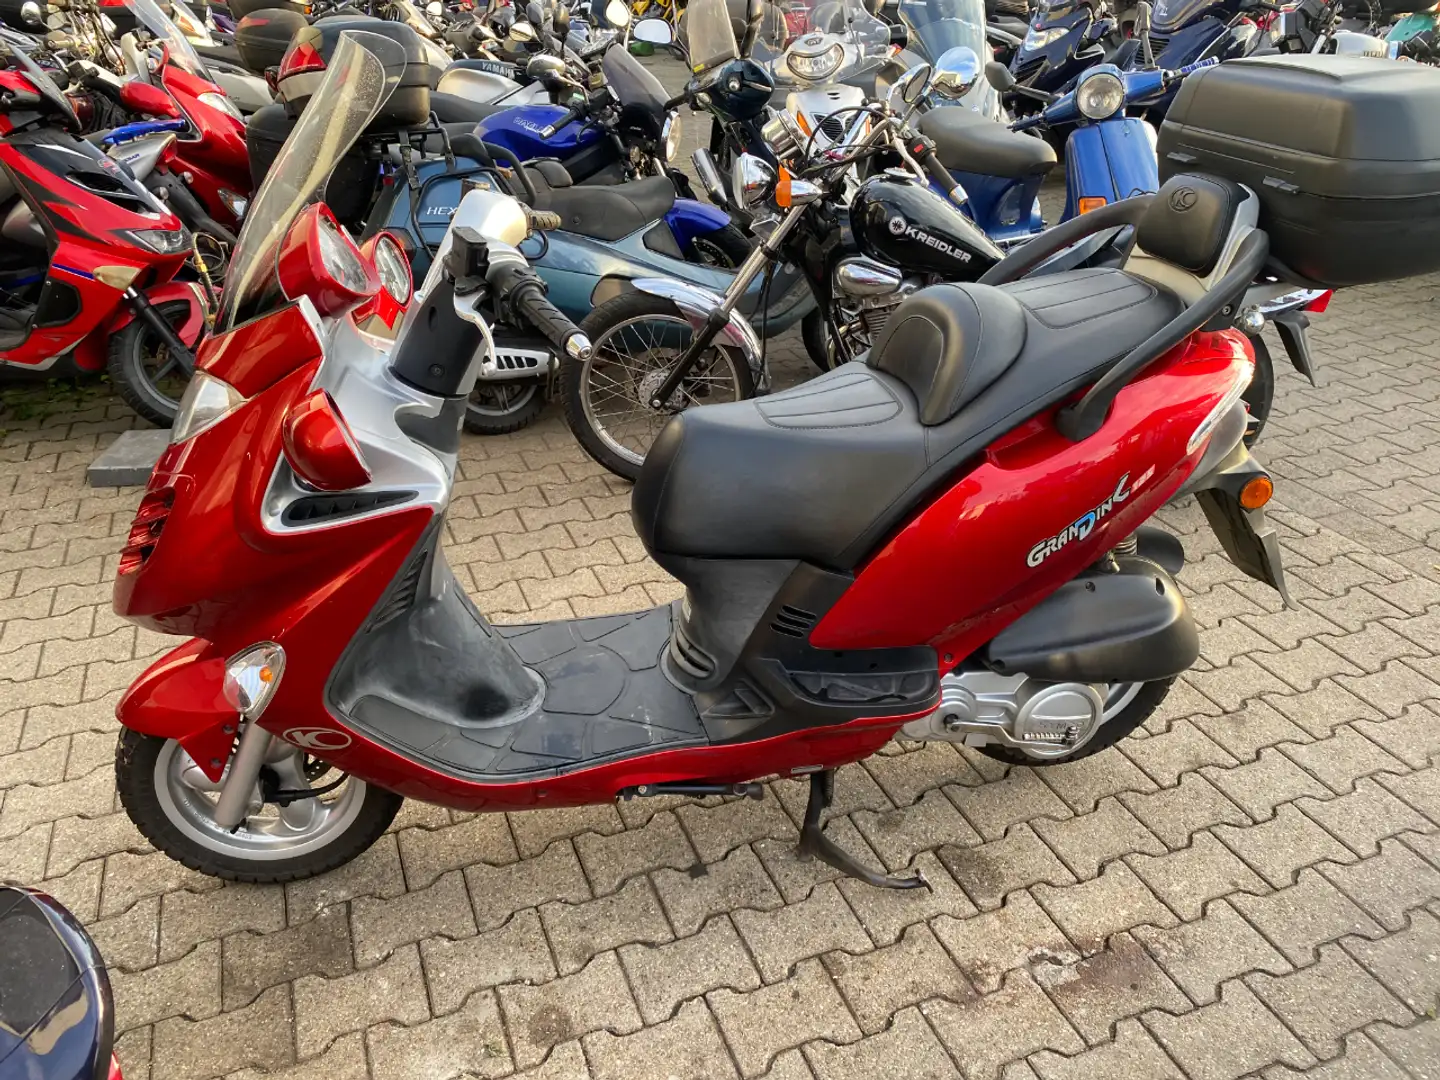 Kymco Grand Dink 125 Roller/Scooter in Rot gebraucht in Herne für € 1.650,-